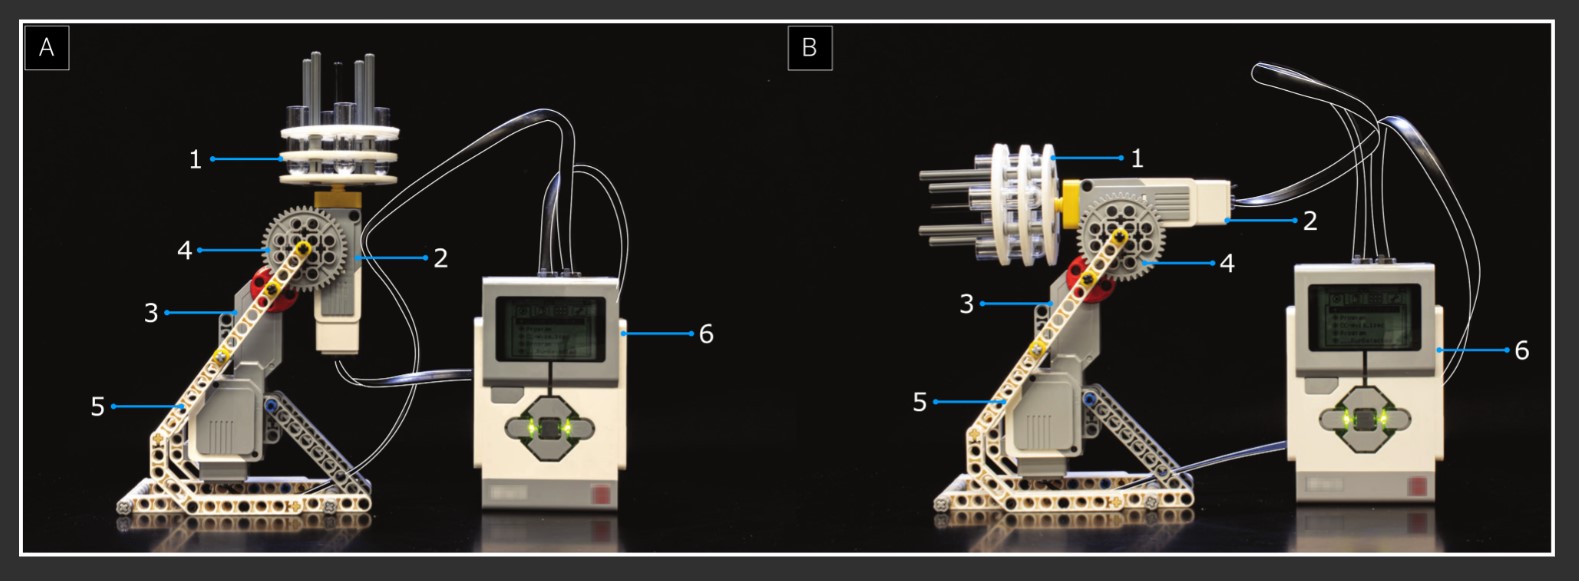 Robot z LEGO tworzy origami DNA (źródło: PLOS ONE/University of Arizona)